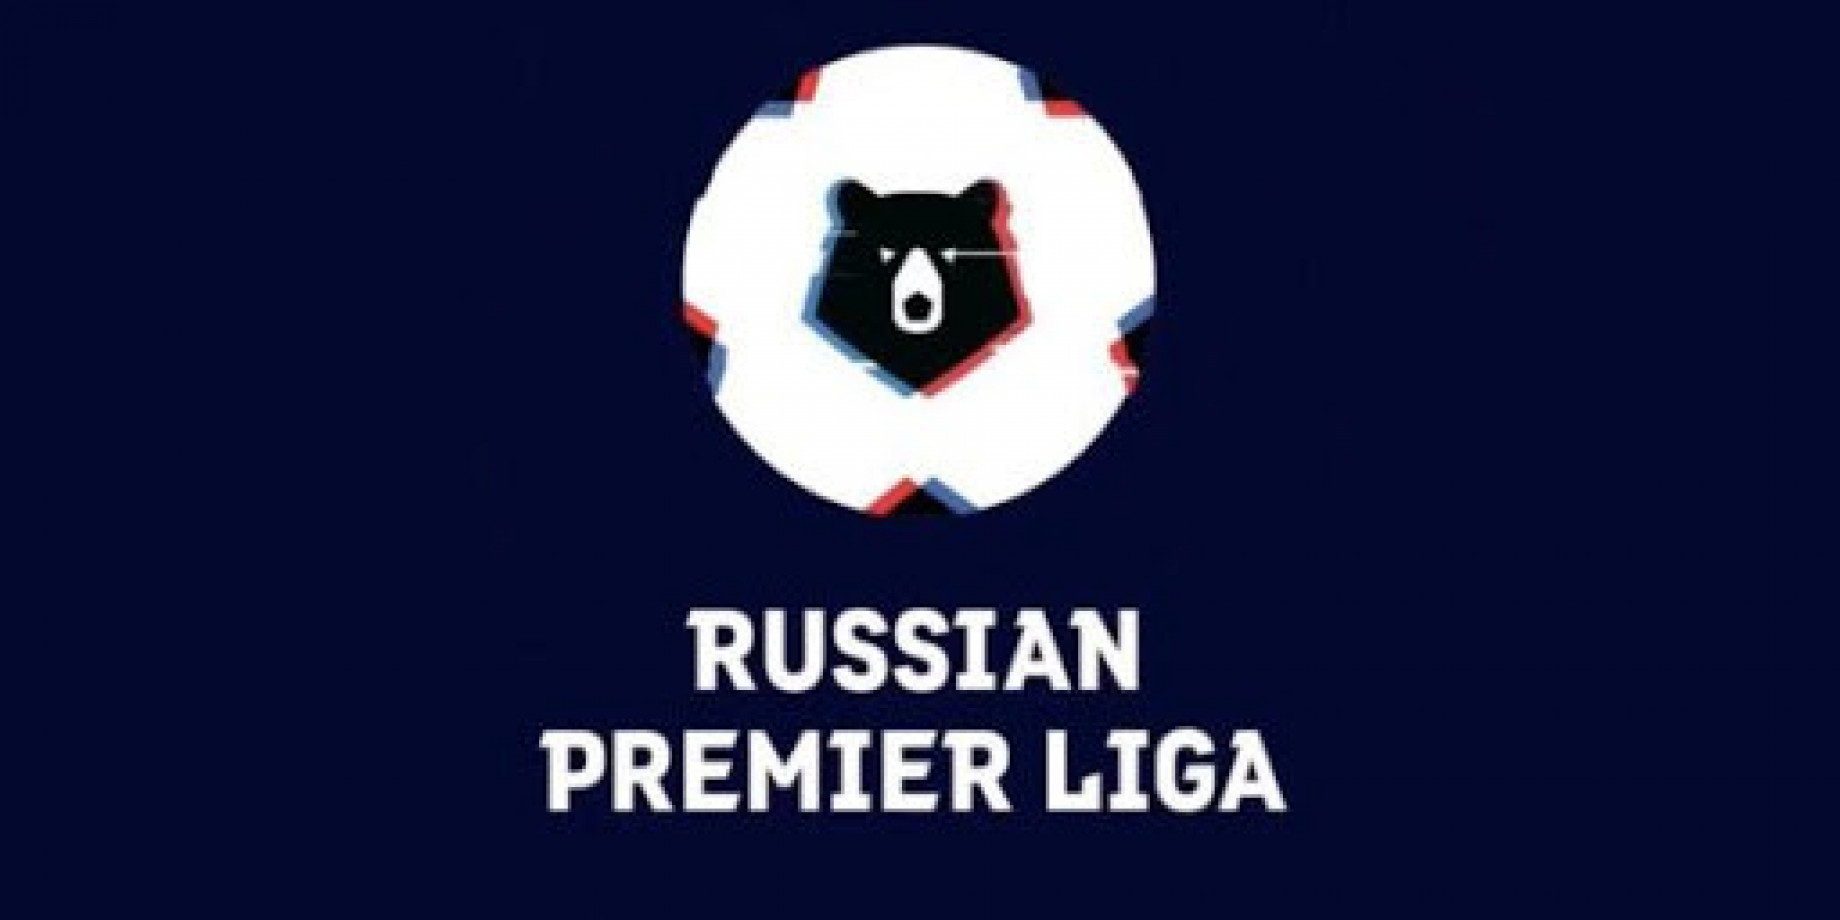 logo russian premier league.jpg